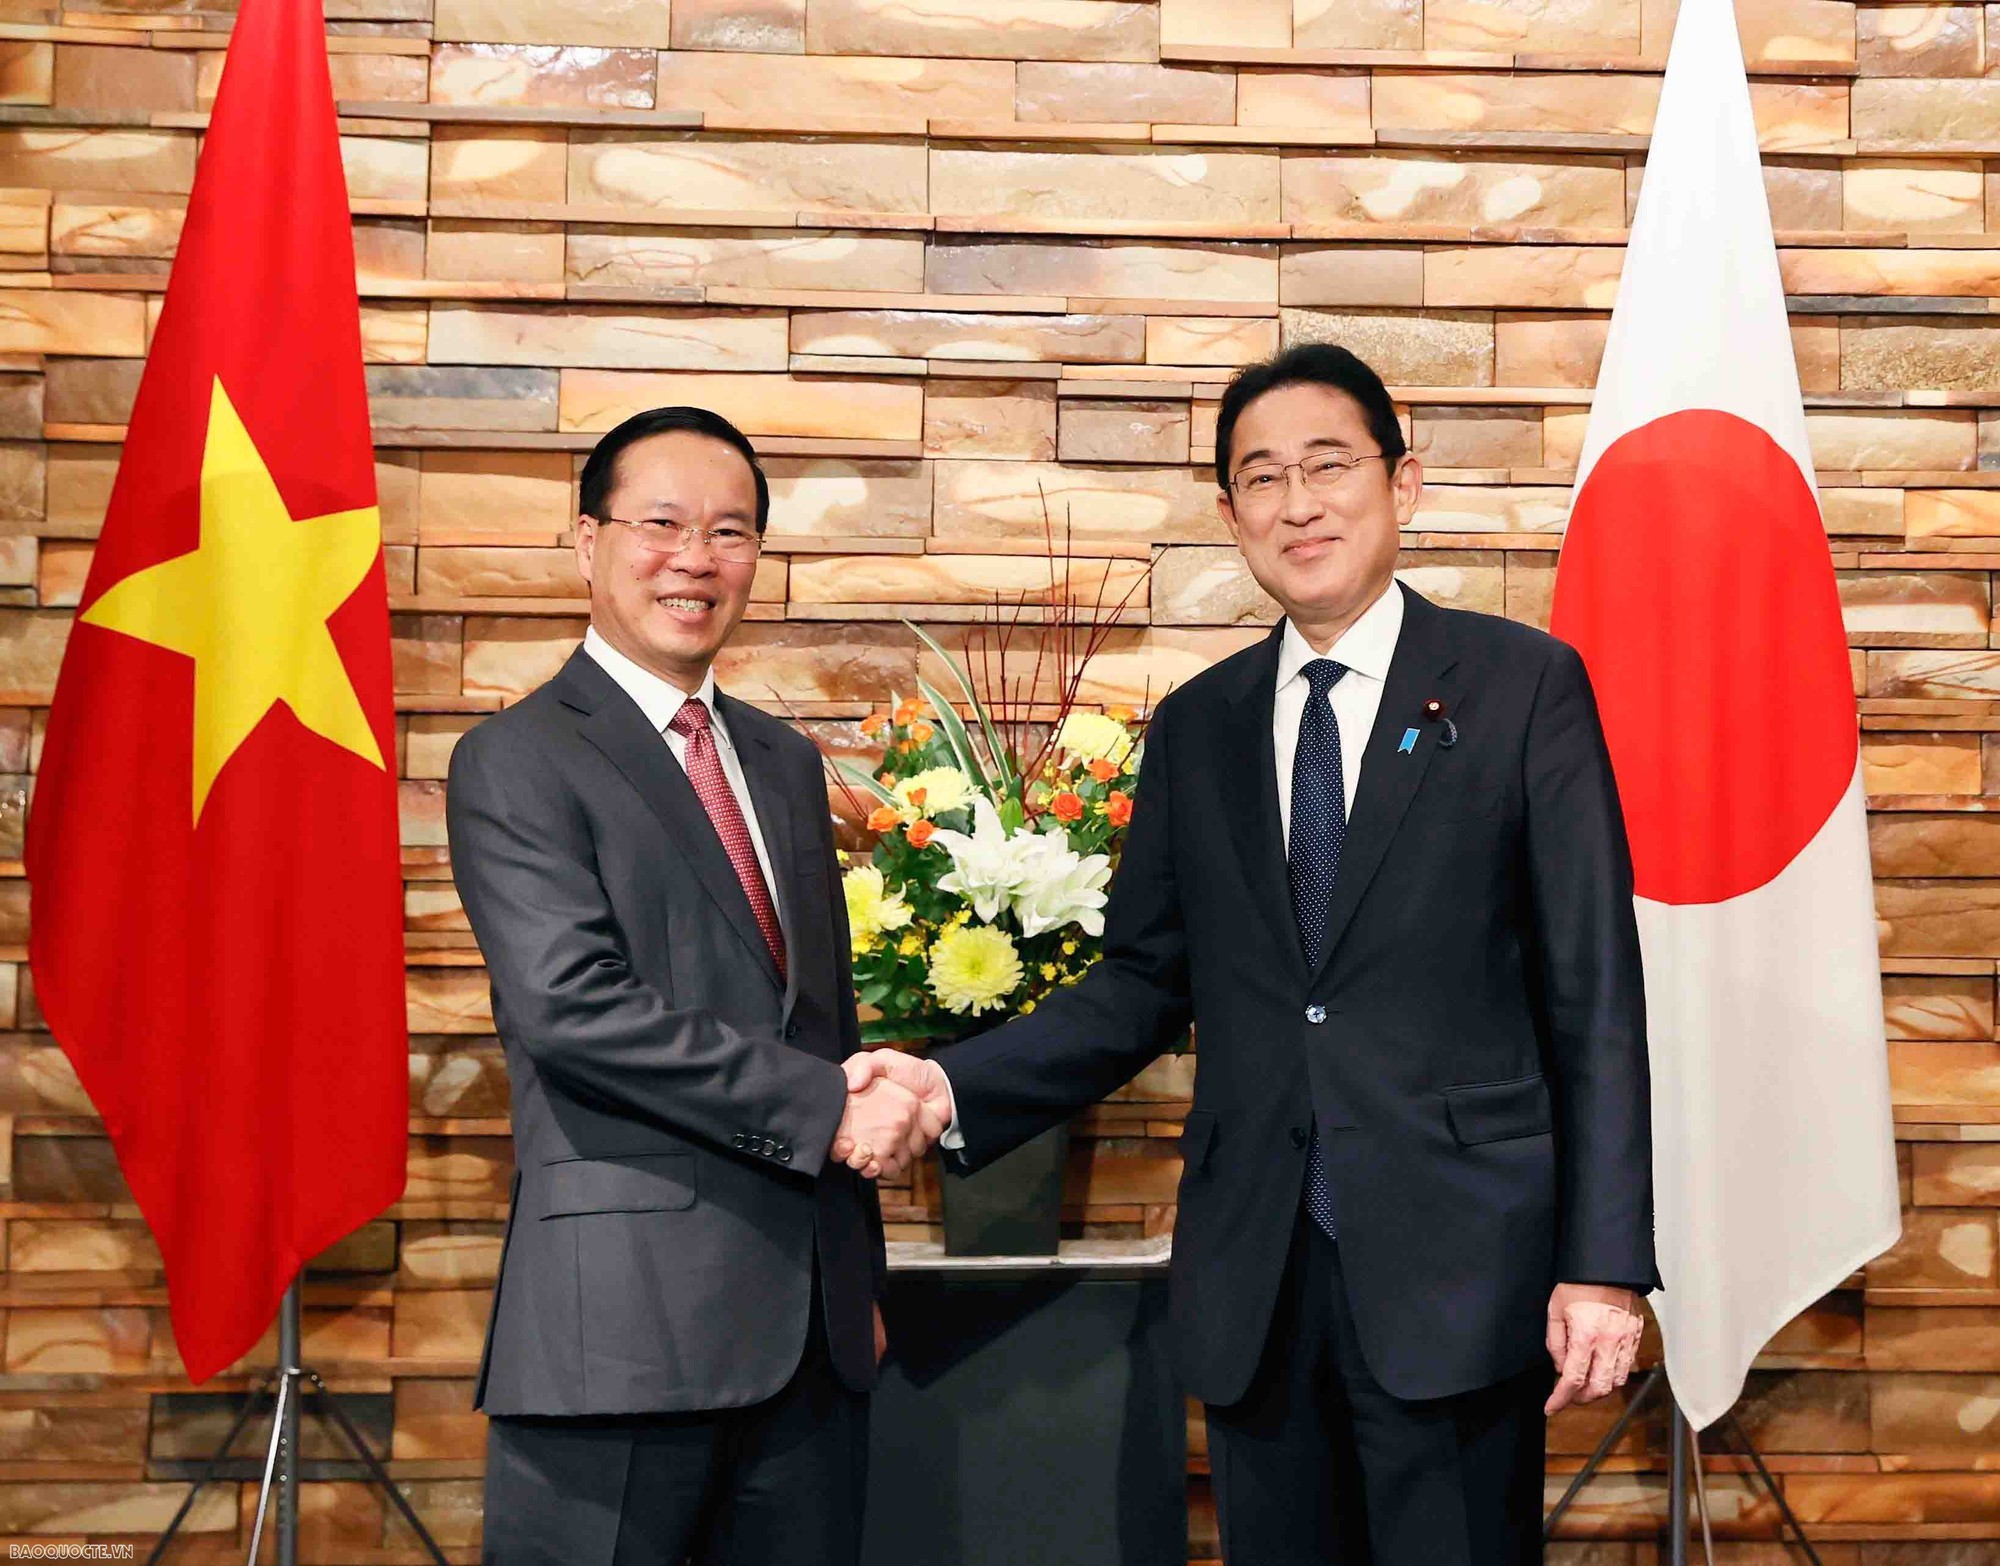 Chuyến thăm Nhật Bản của Chủ tịch nước đã đạt được những kết quả quan trọng và toàn diện